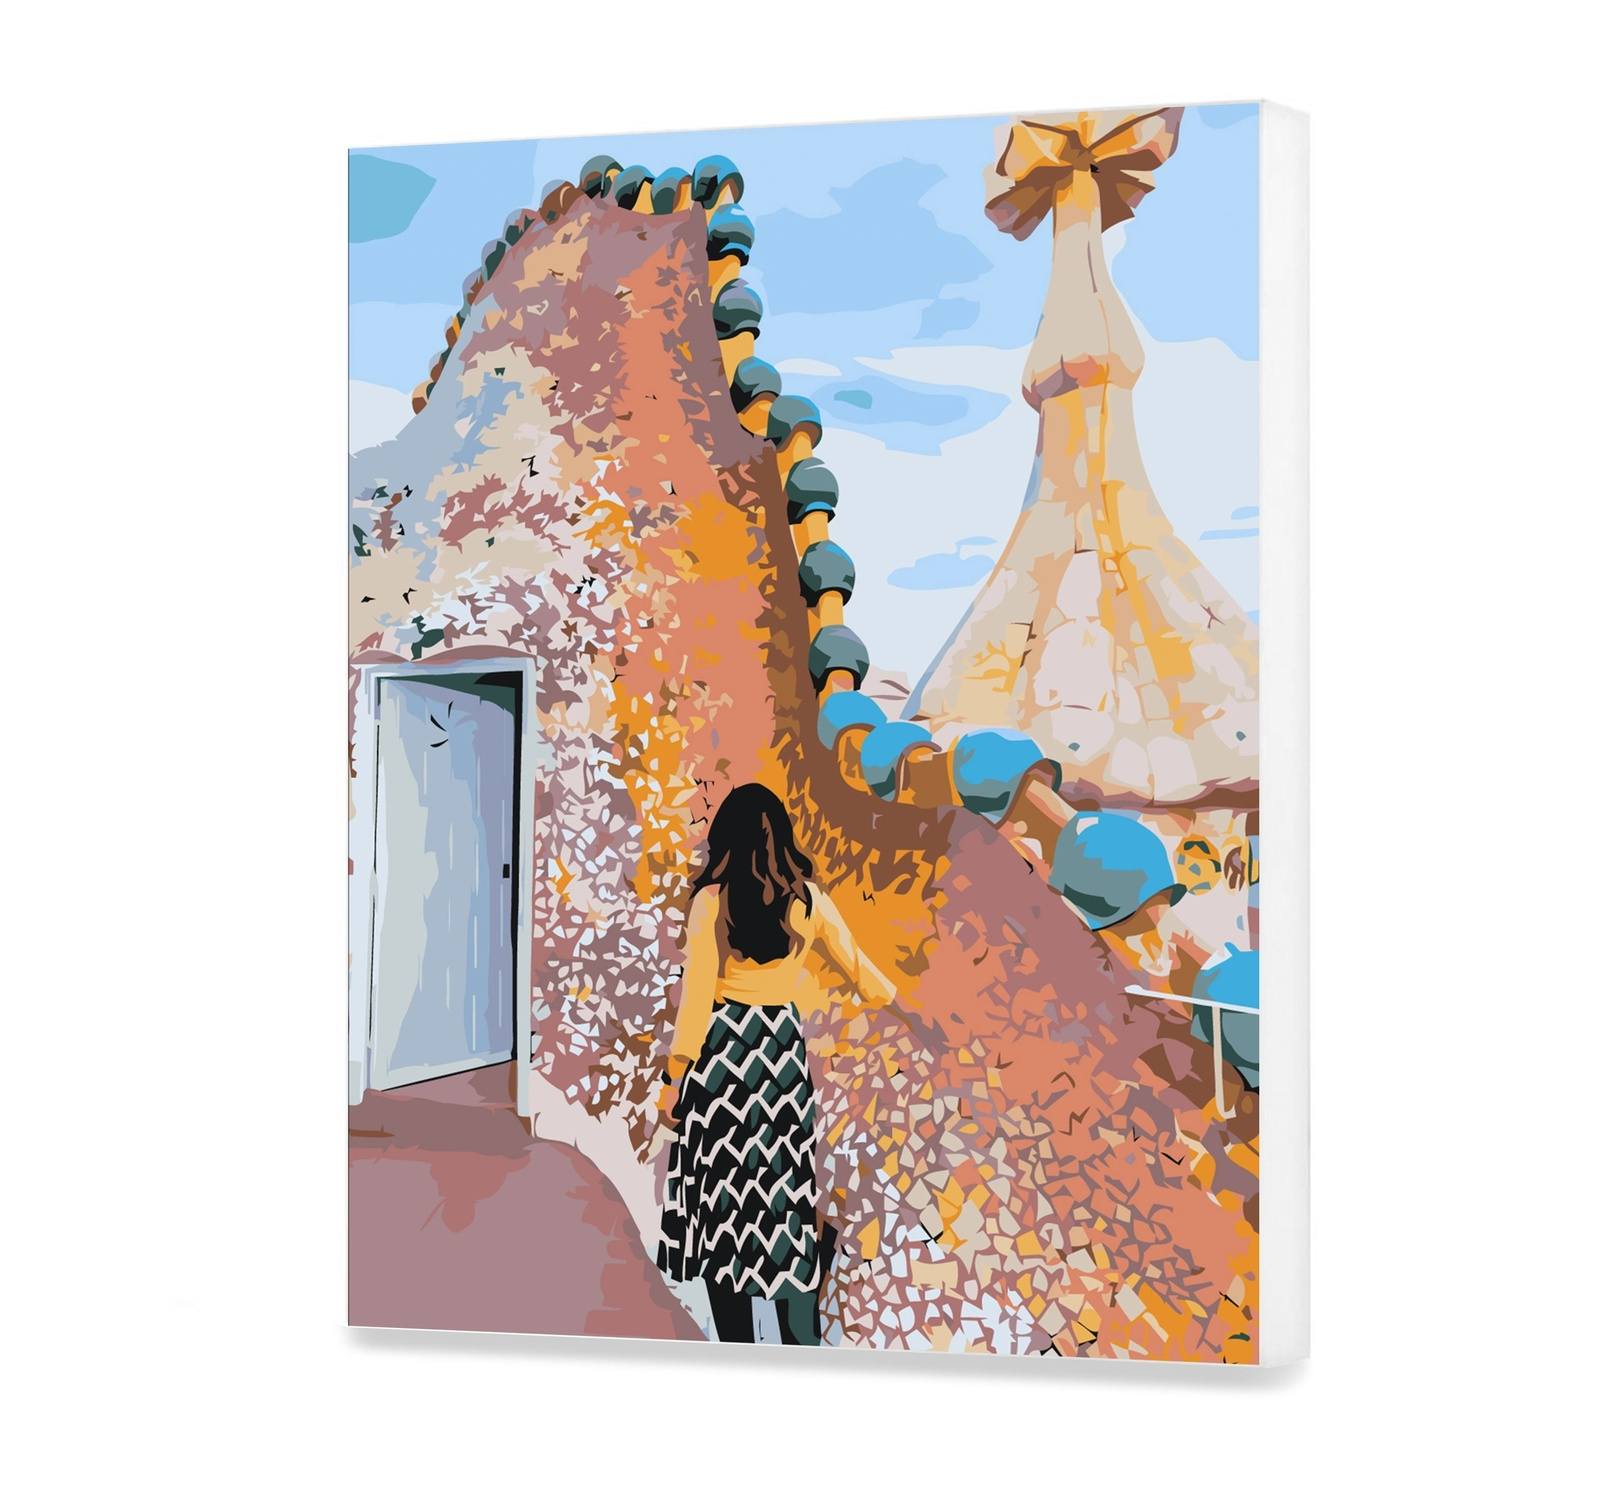 Barcelona – Casa Batlló